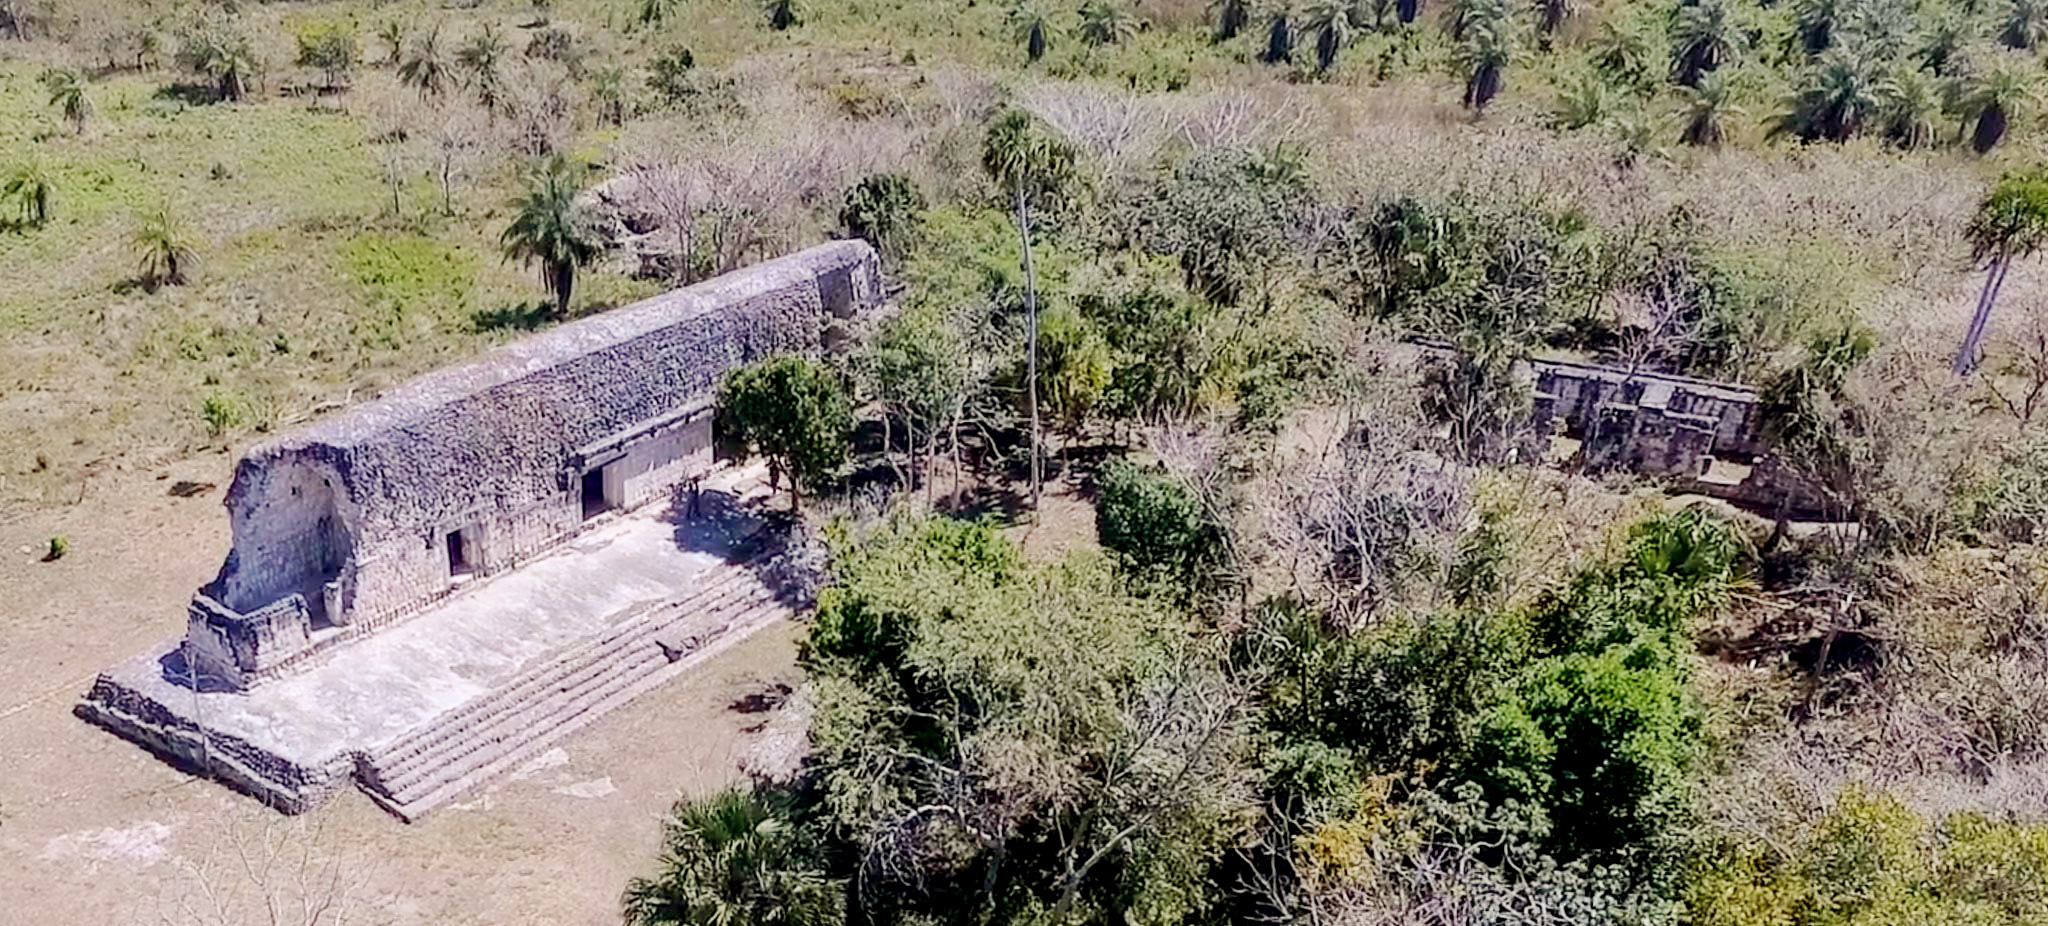 Kulubá, punta de lanza para el rescate arqueológico en Yucatán